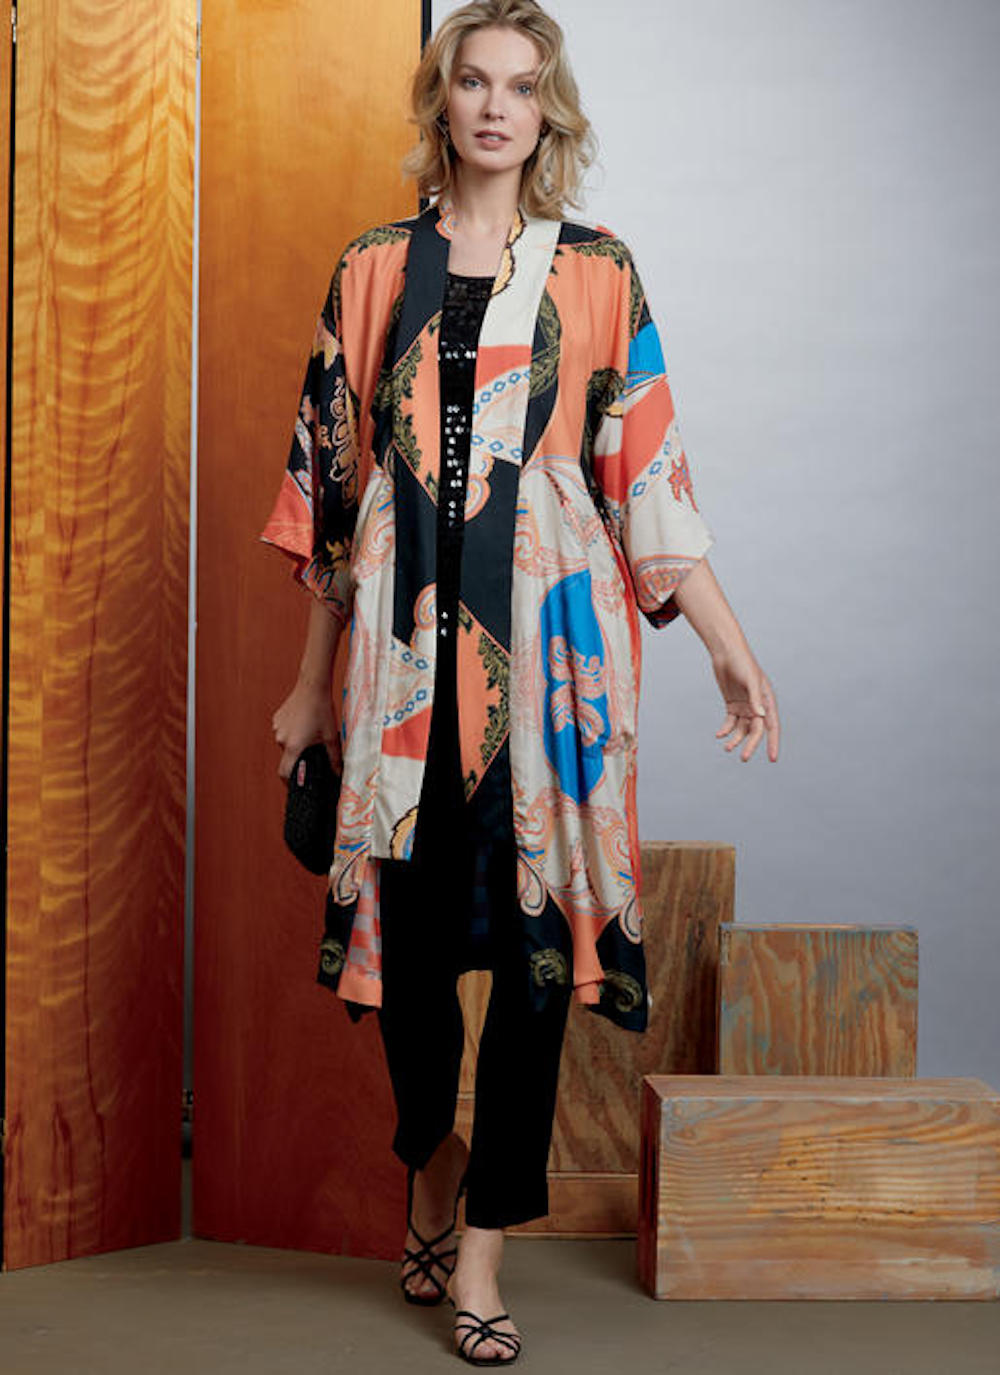 Vogue® Patterns Papierschnittmuster Kimono V1610, Größe OSZ (Sandra Betzina)